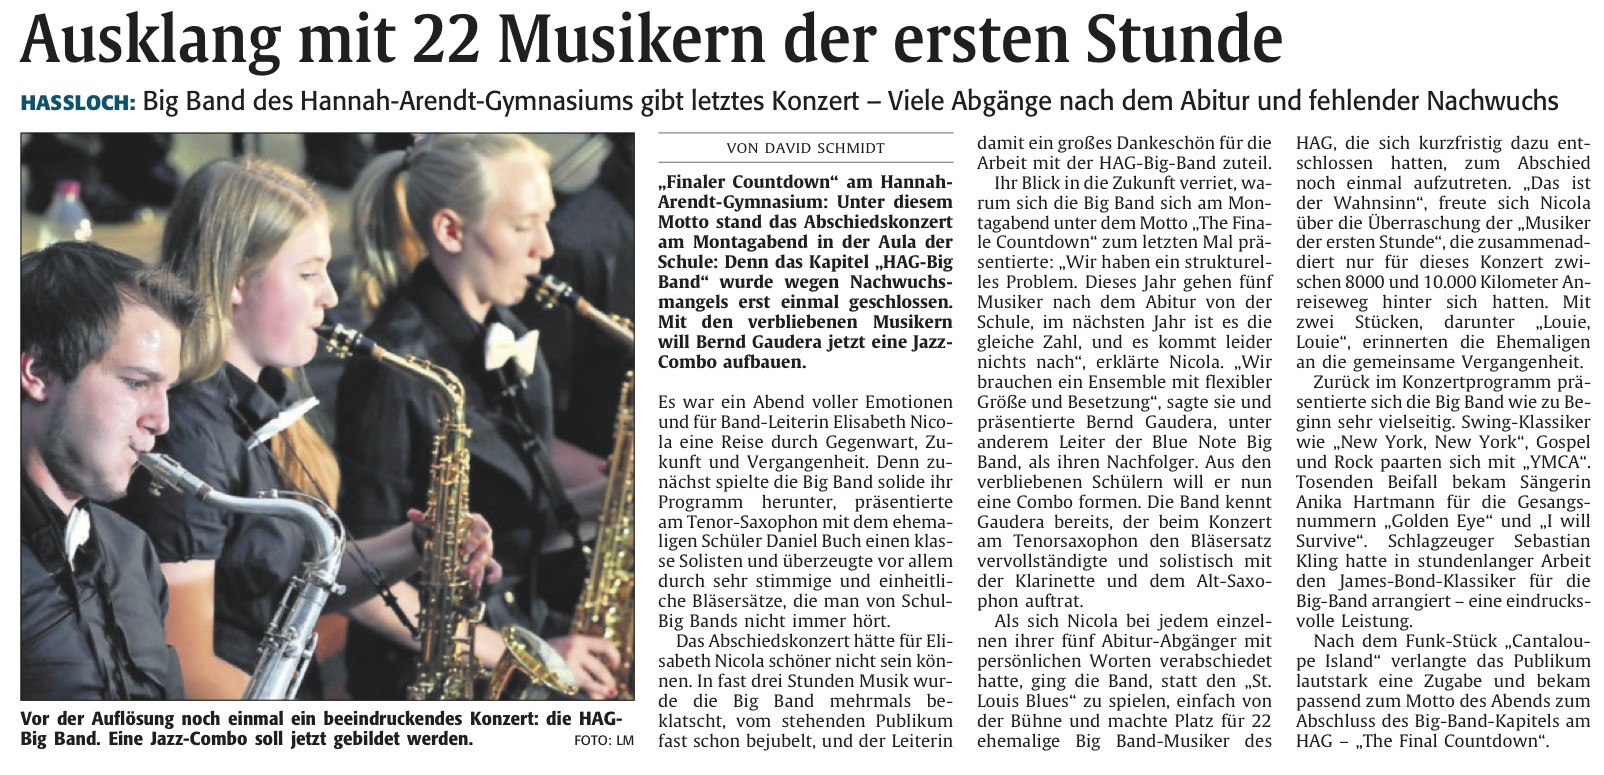 Die Rheinpfalz vom 28.3.2012 - Ausklang mit Musikern der ersten Stunde